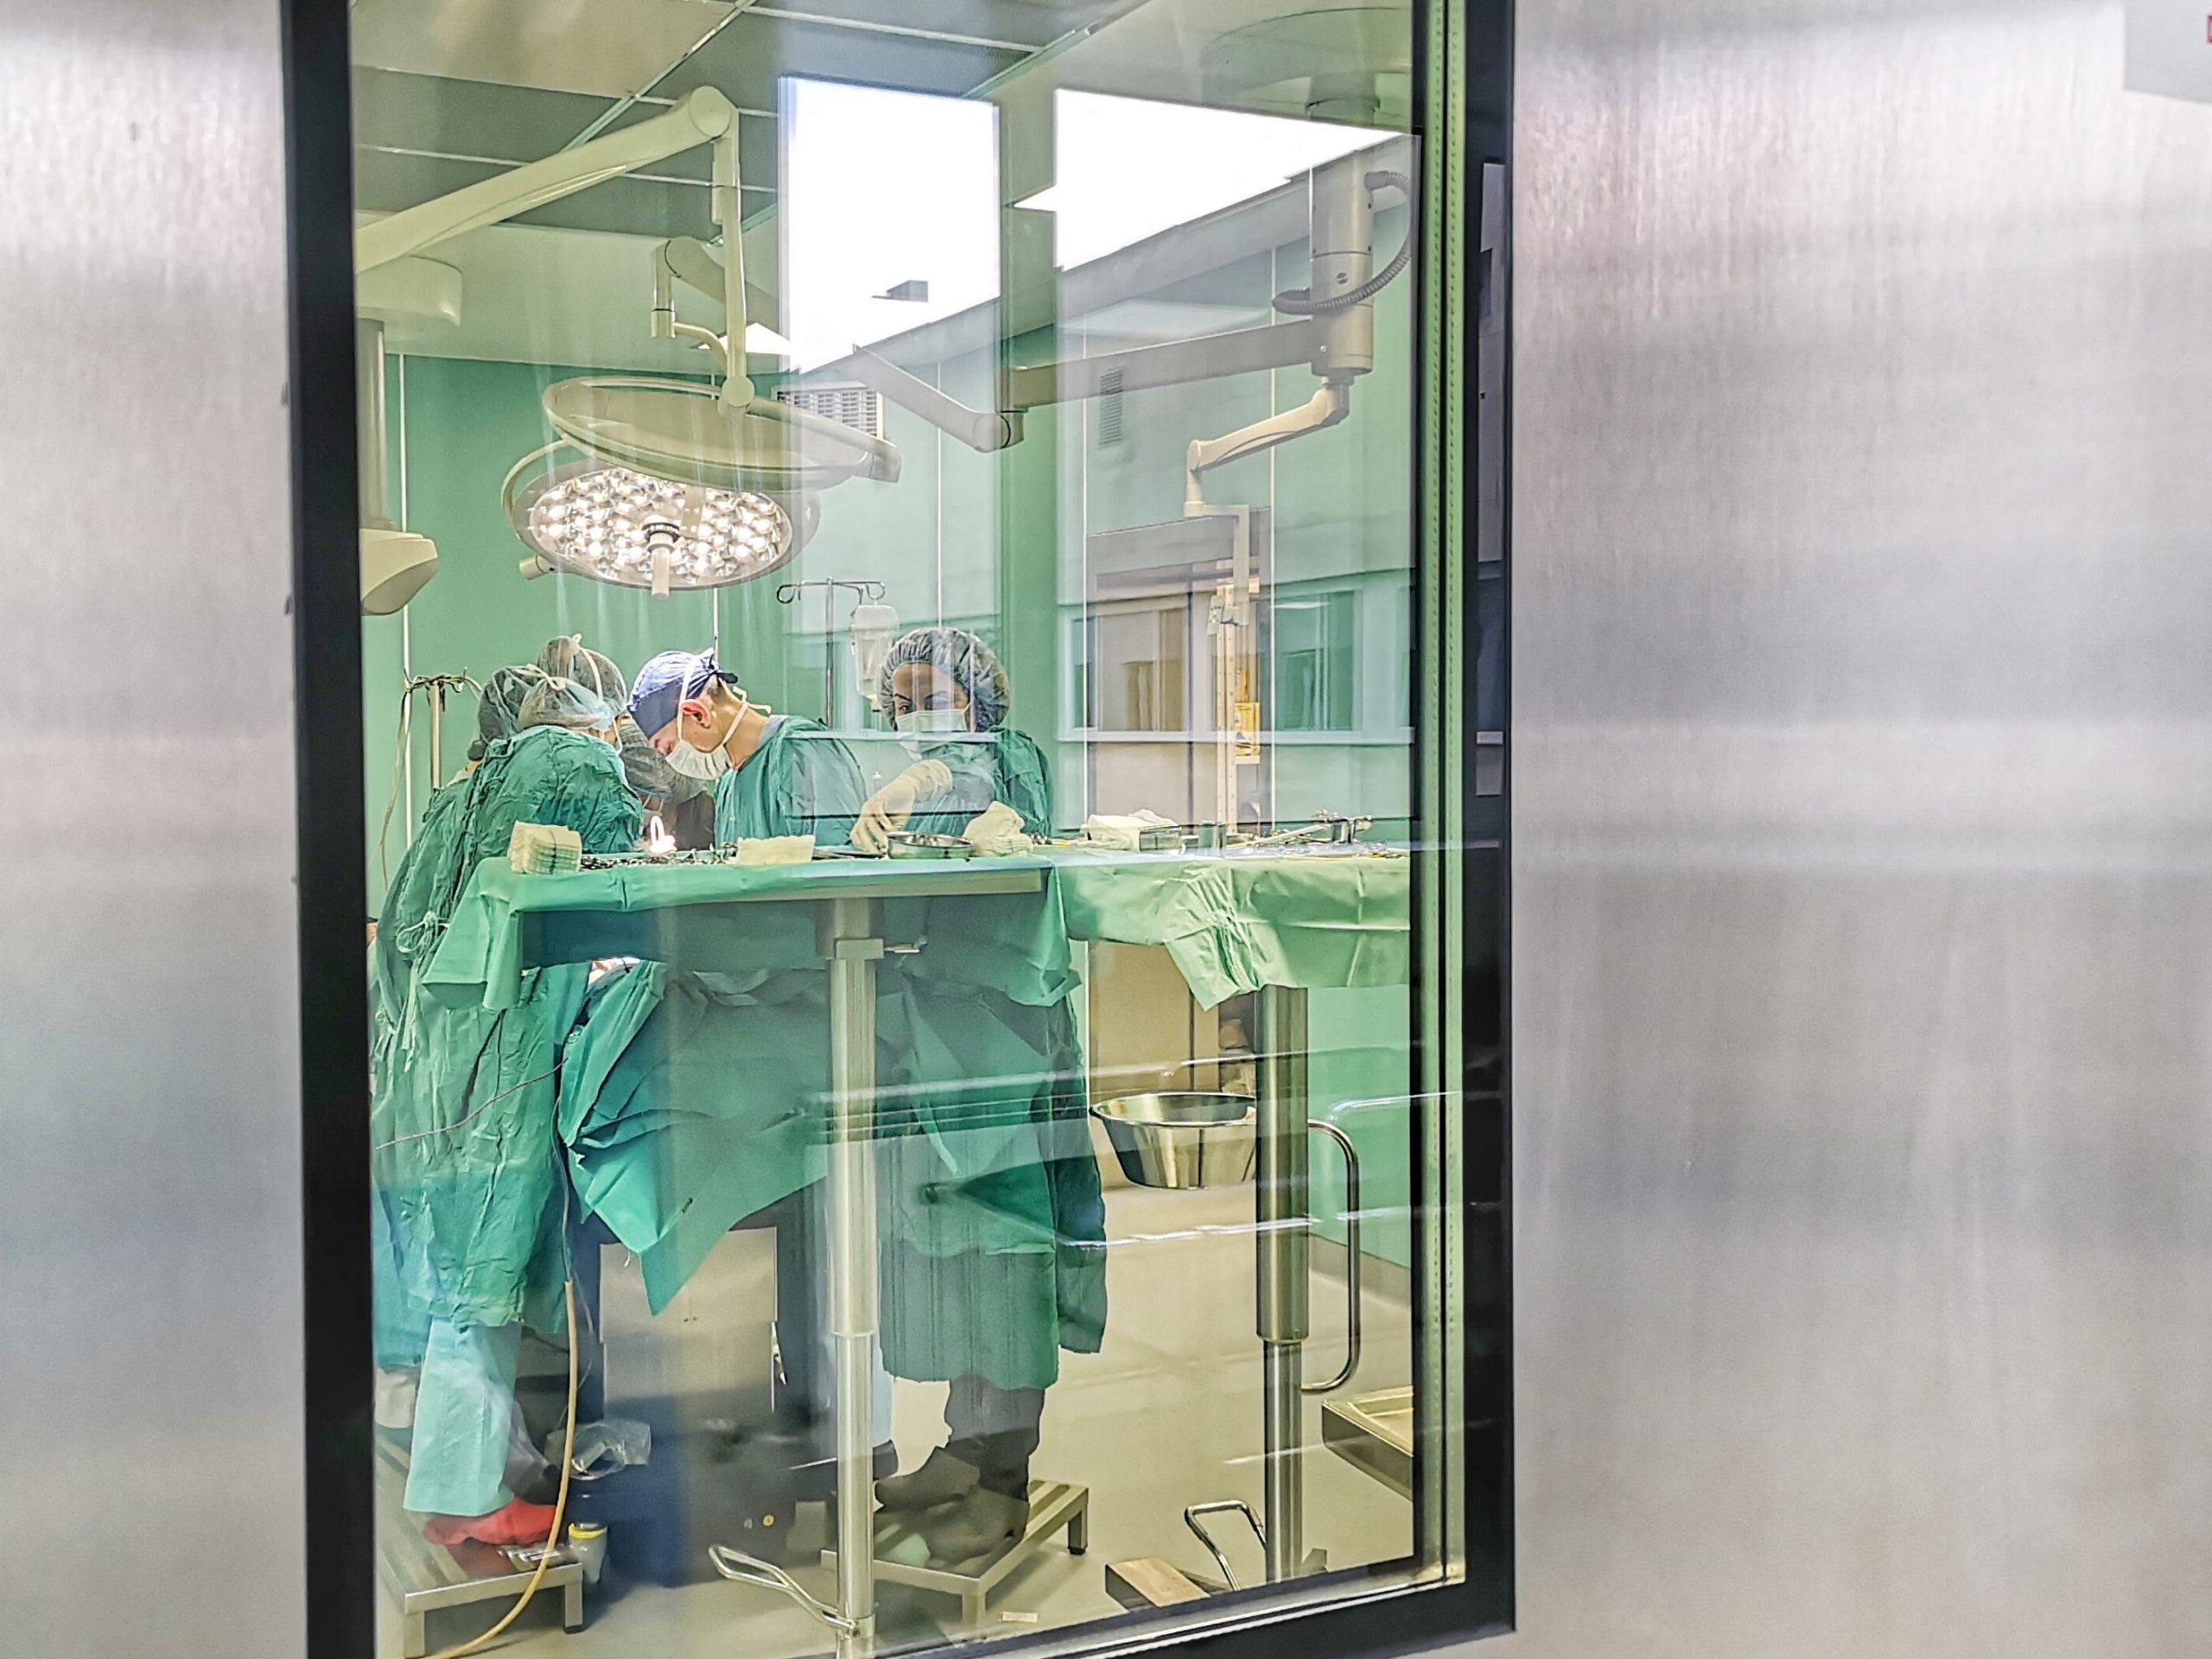 Още 5 операционни зали от световна класа за хирурзите от ВМА